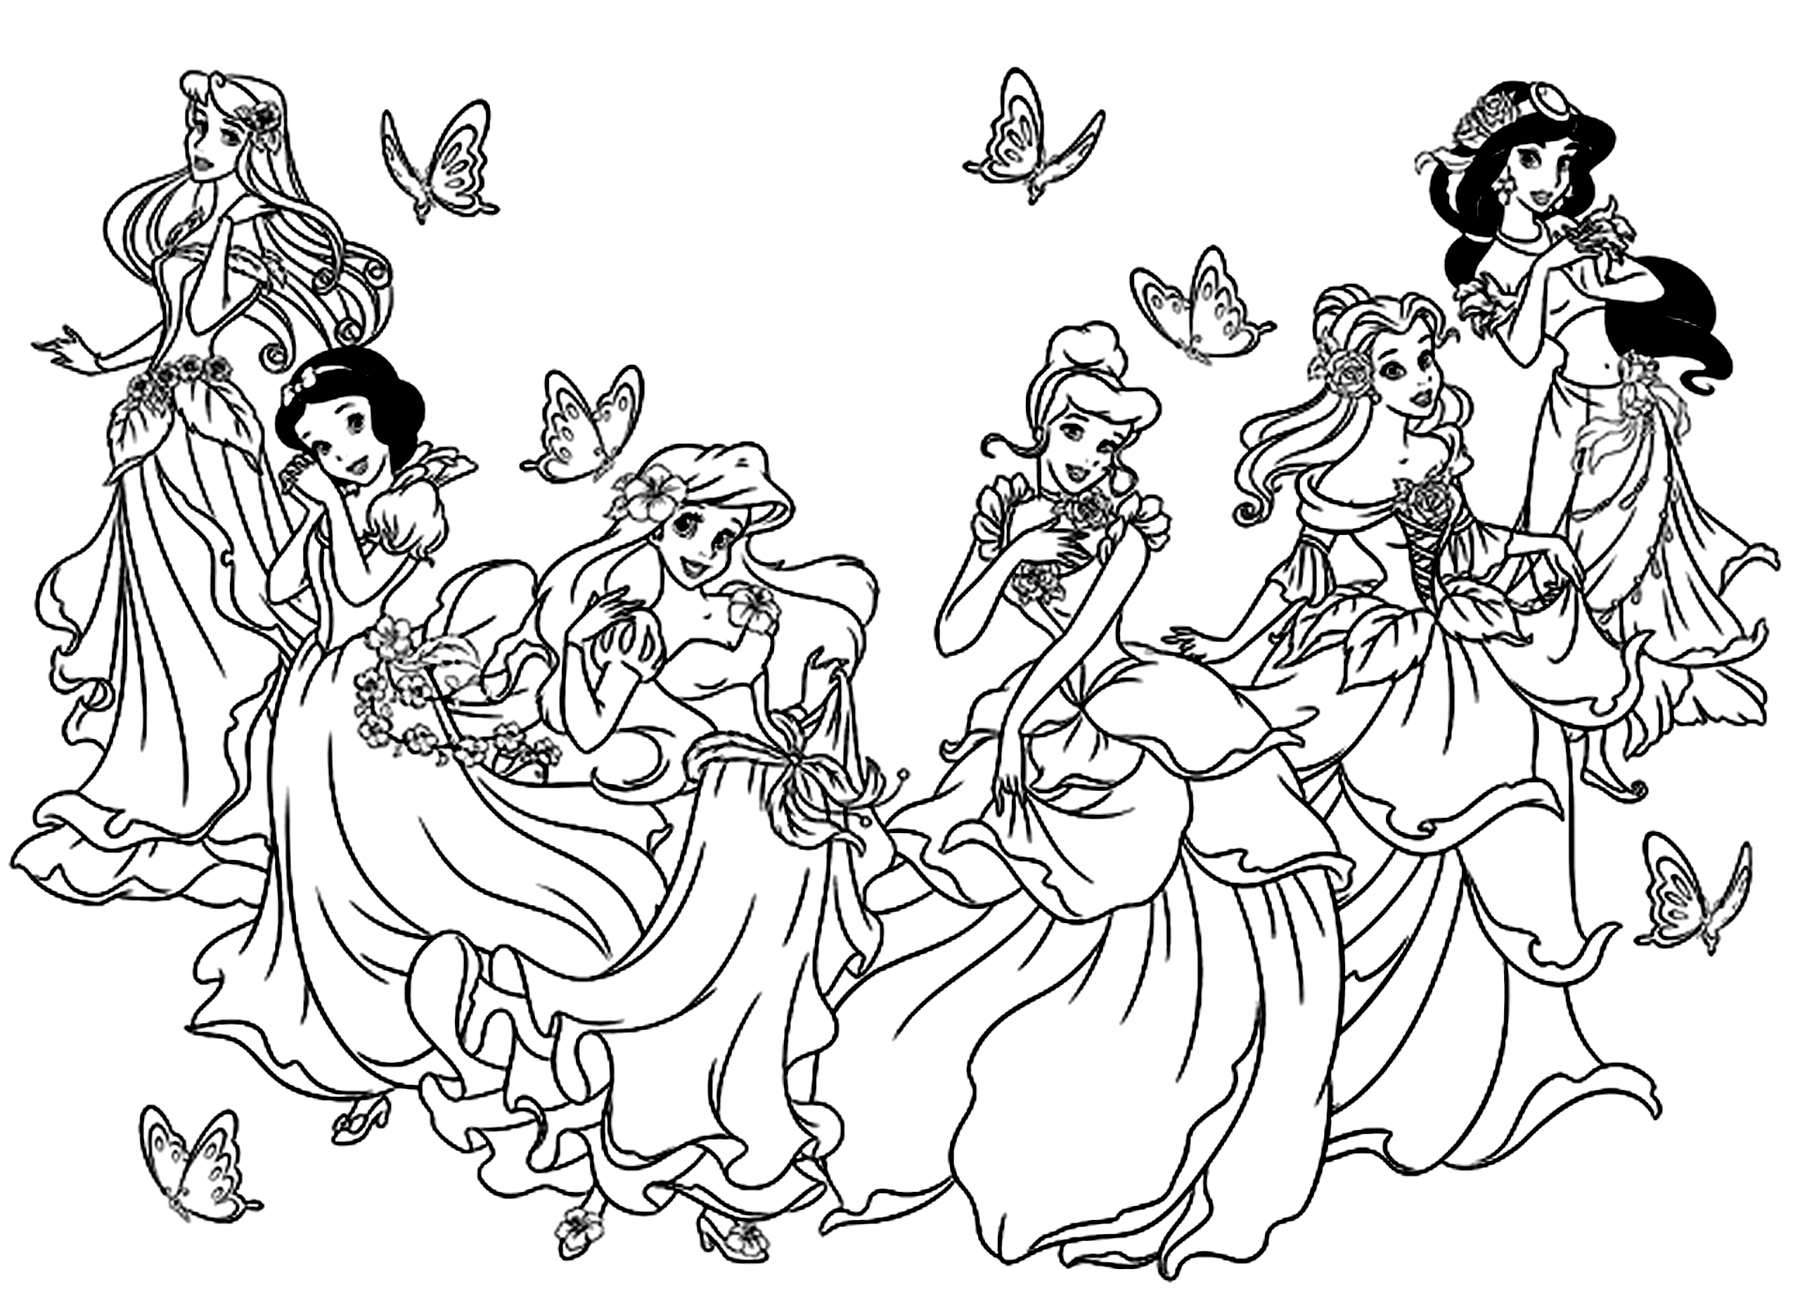 Todas as princesas da Disney num só desenho para colorir. Branca de Neve, Cinderela, Aurora (A Bela Adormecida), Ariel (A Pequena Sereia), Belle (A Bela e o Monstro) , Jasmine (Aladino).Estas princesas não figuram neste desenho: Pocahontas e Mulan.